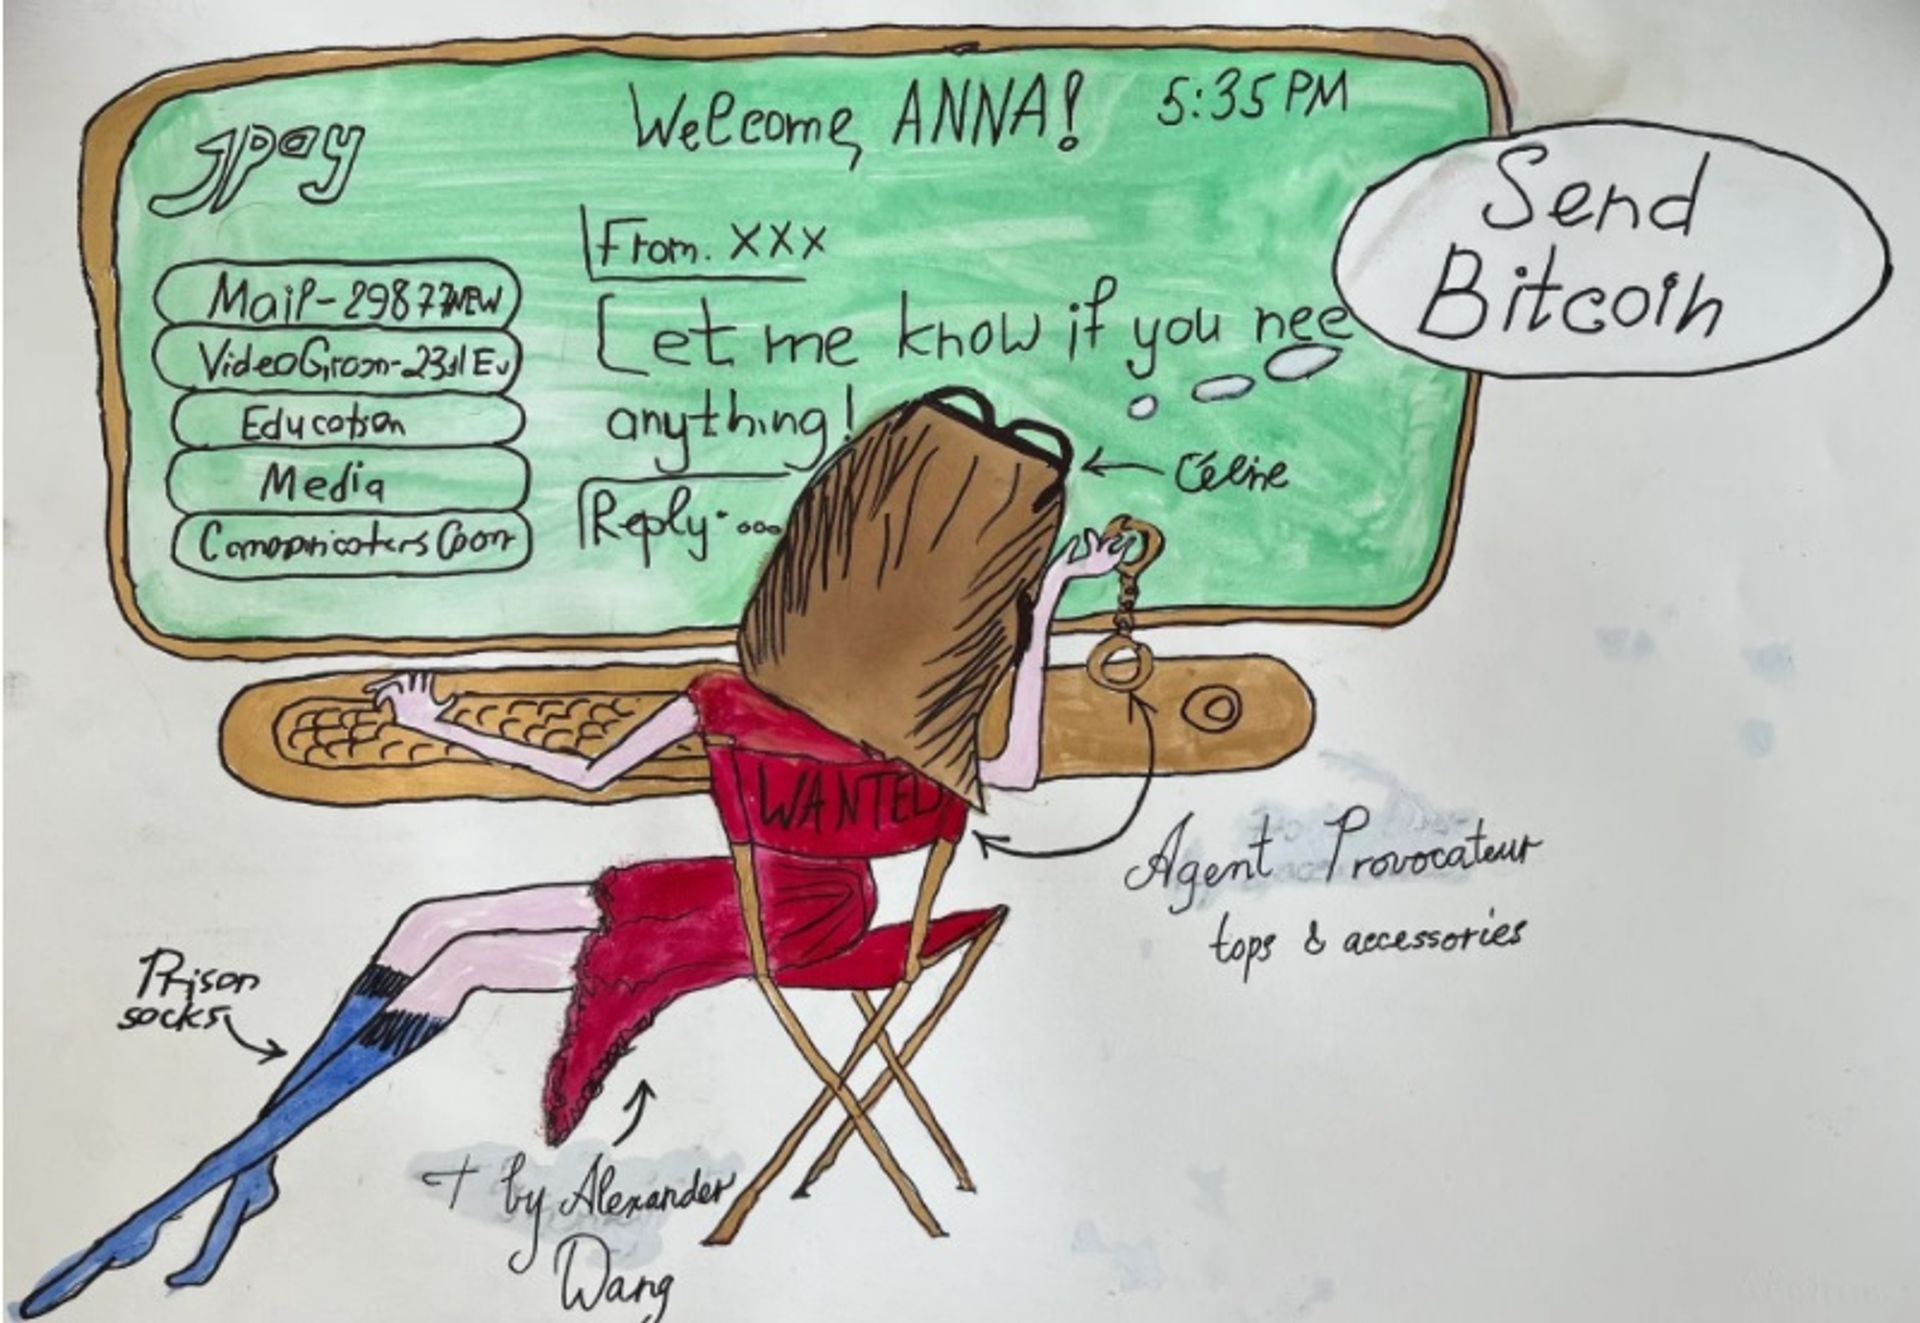 אנה סורוקין, Send Bitcoin

באדיבות האמן